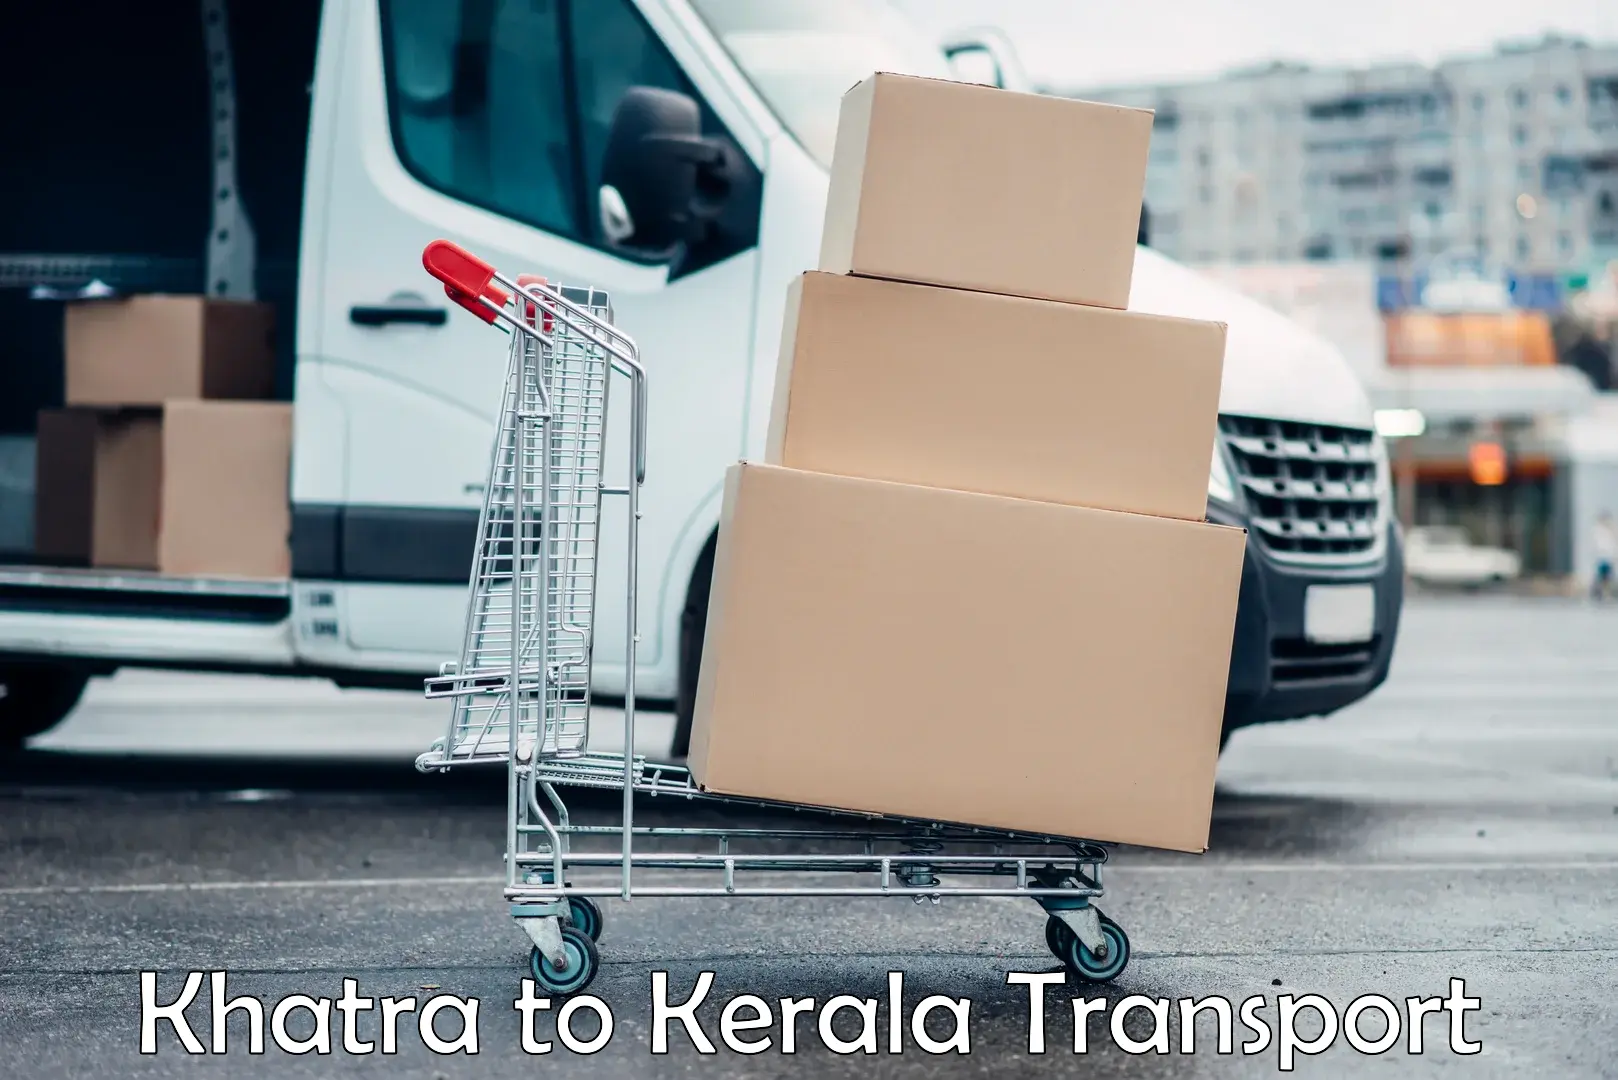 Cargo transportation services Khatra to Kerala